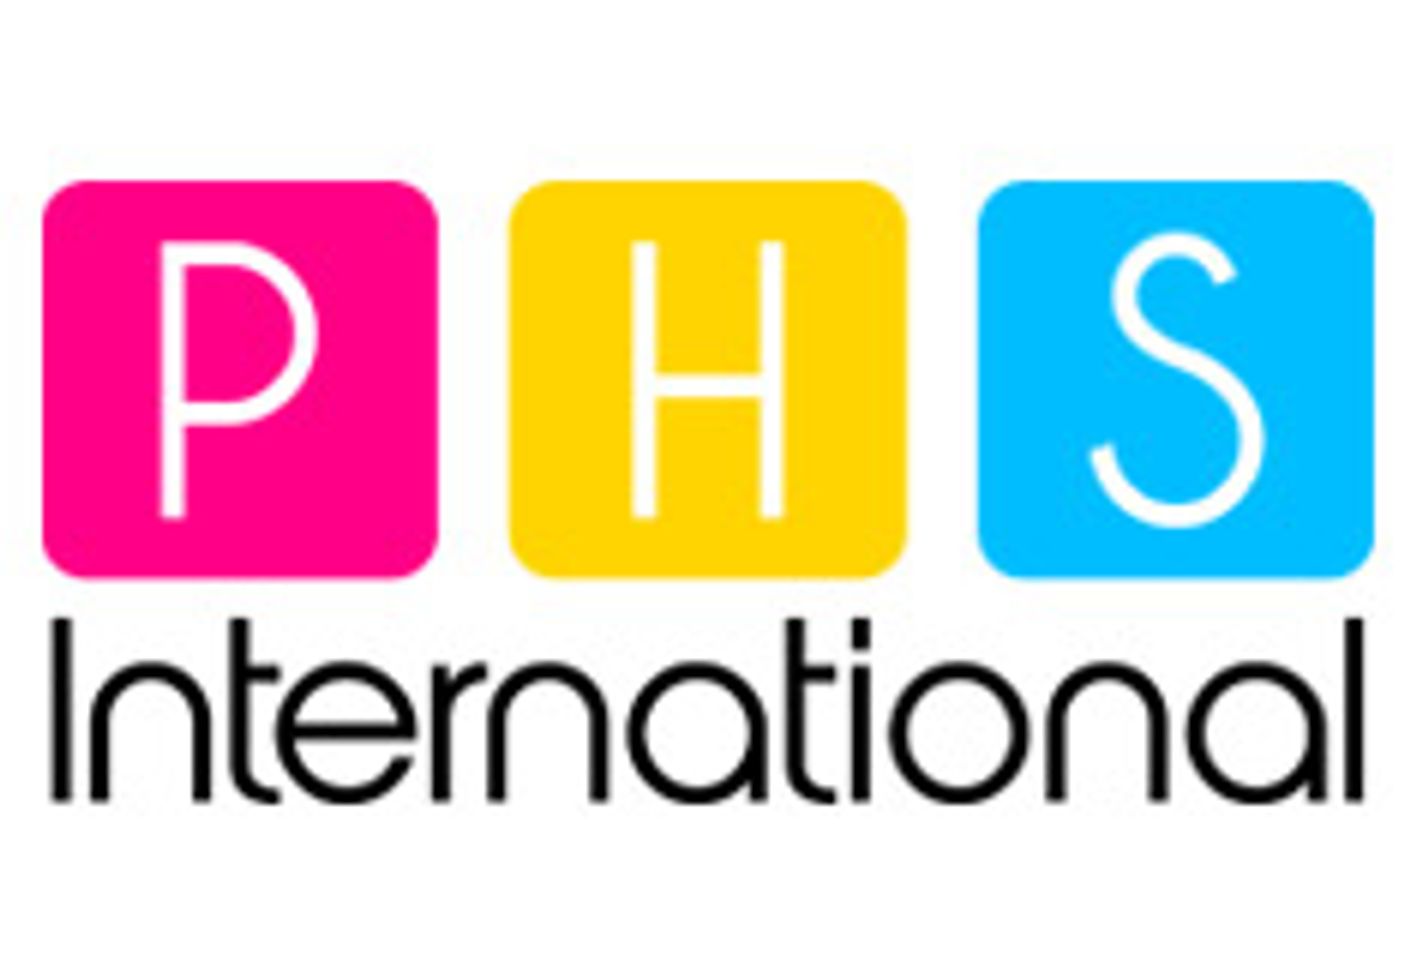 PHS International, SLS Specialty Offering 30 Percent Off Promo